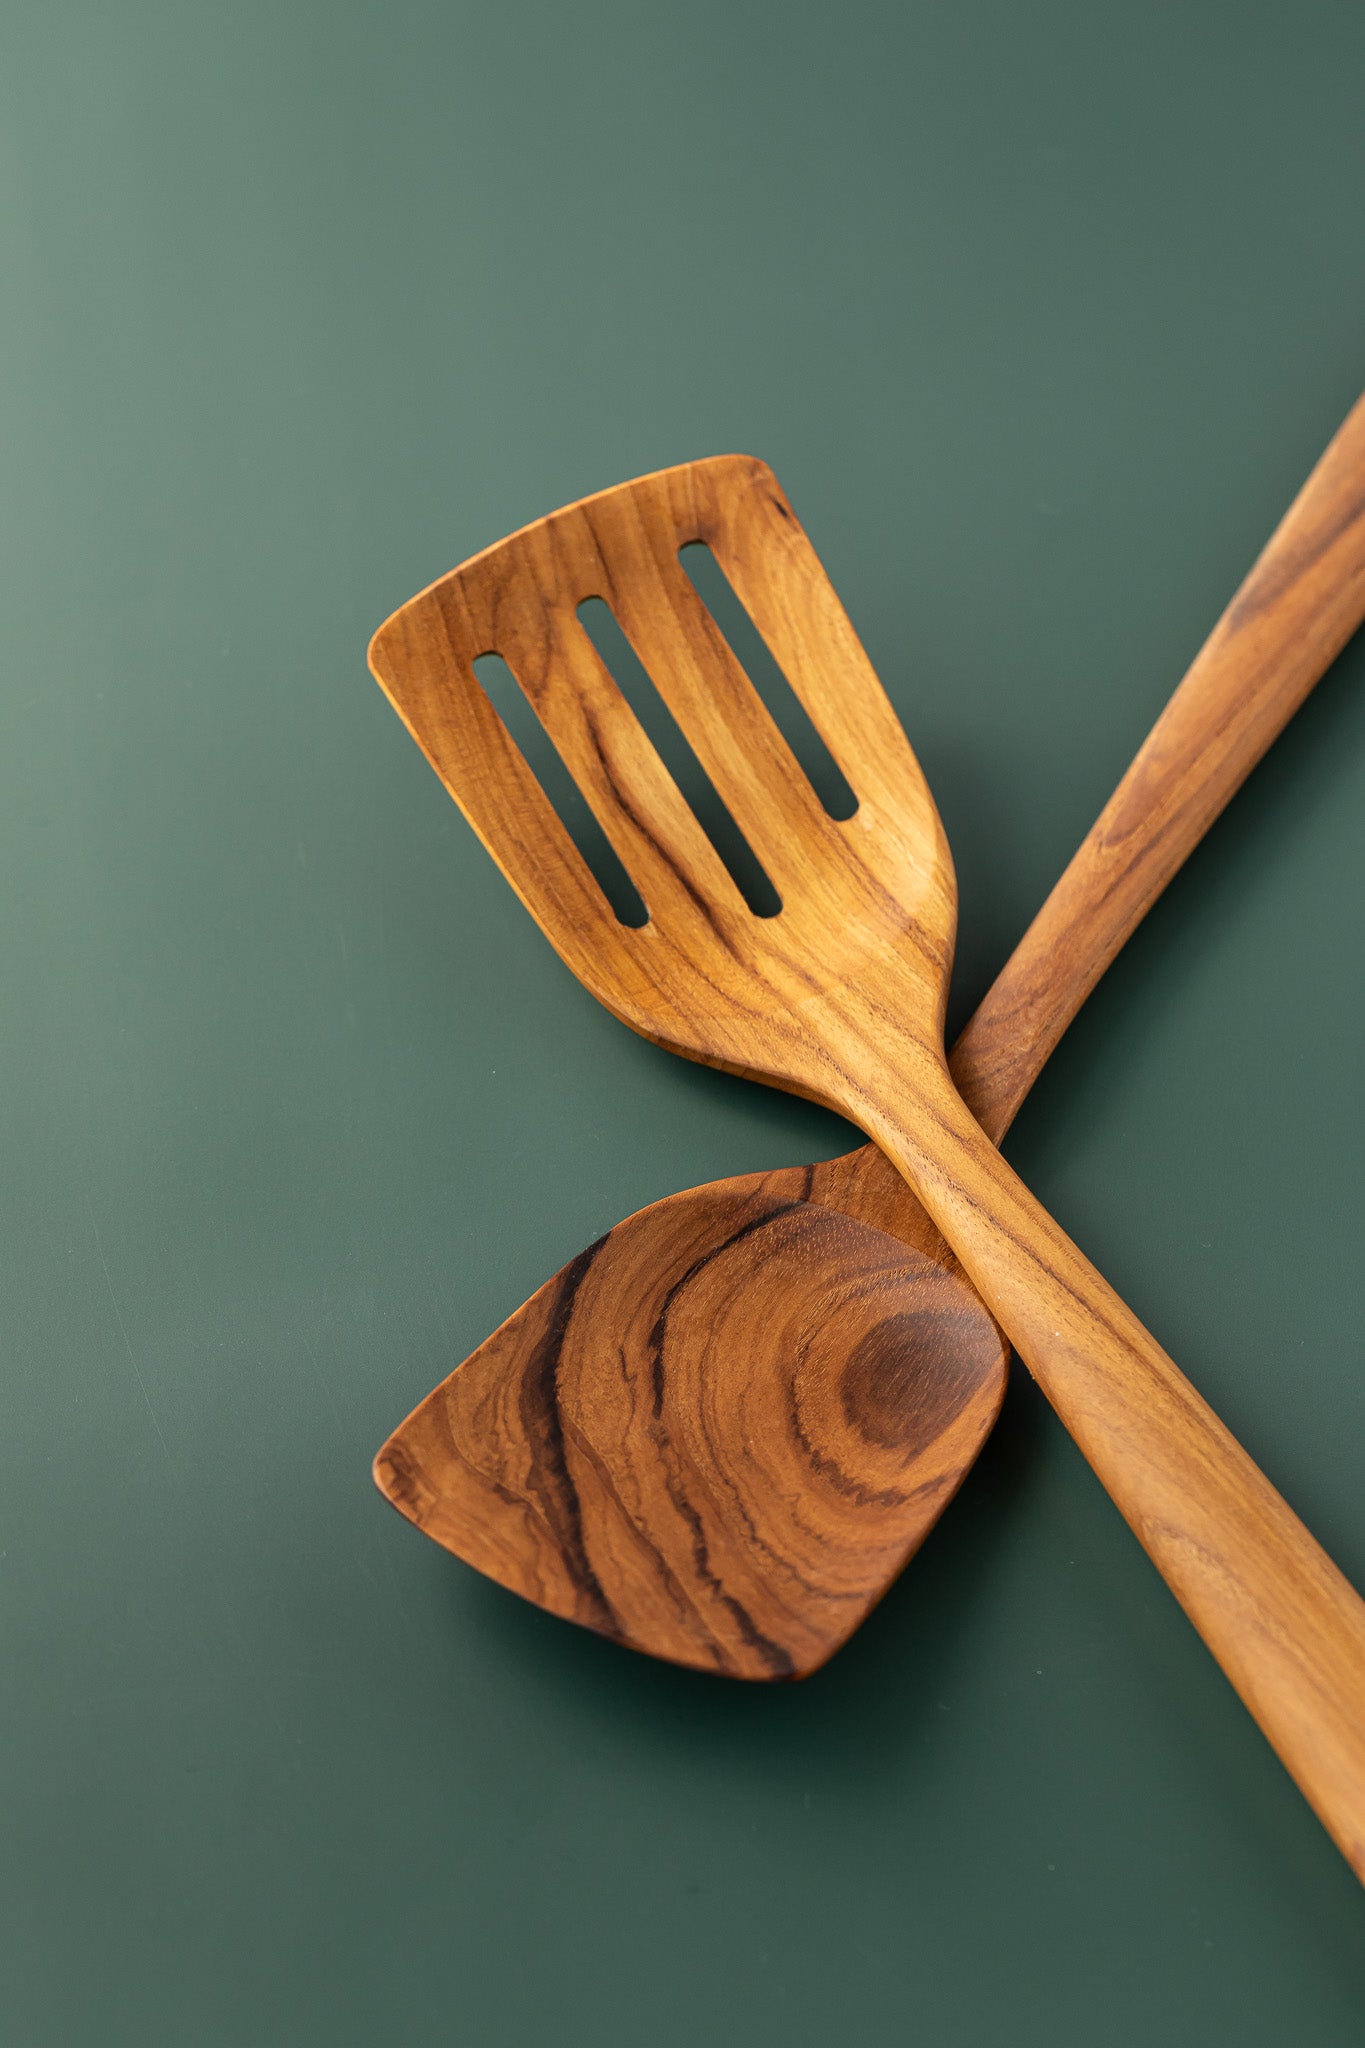 handcrafted wooden spatulas